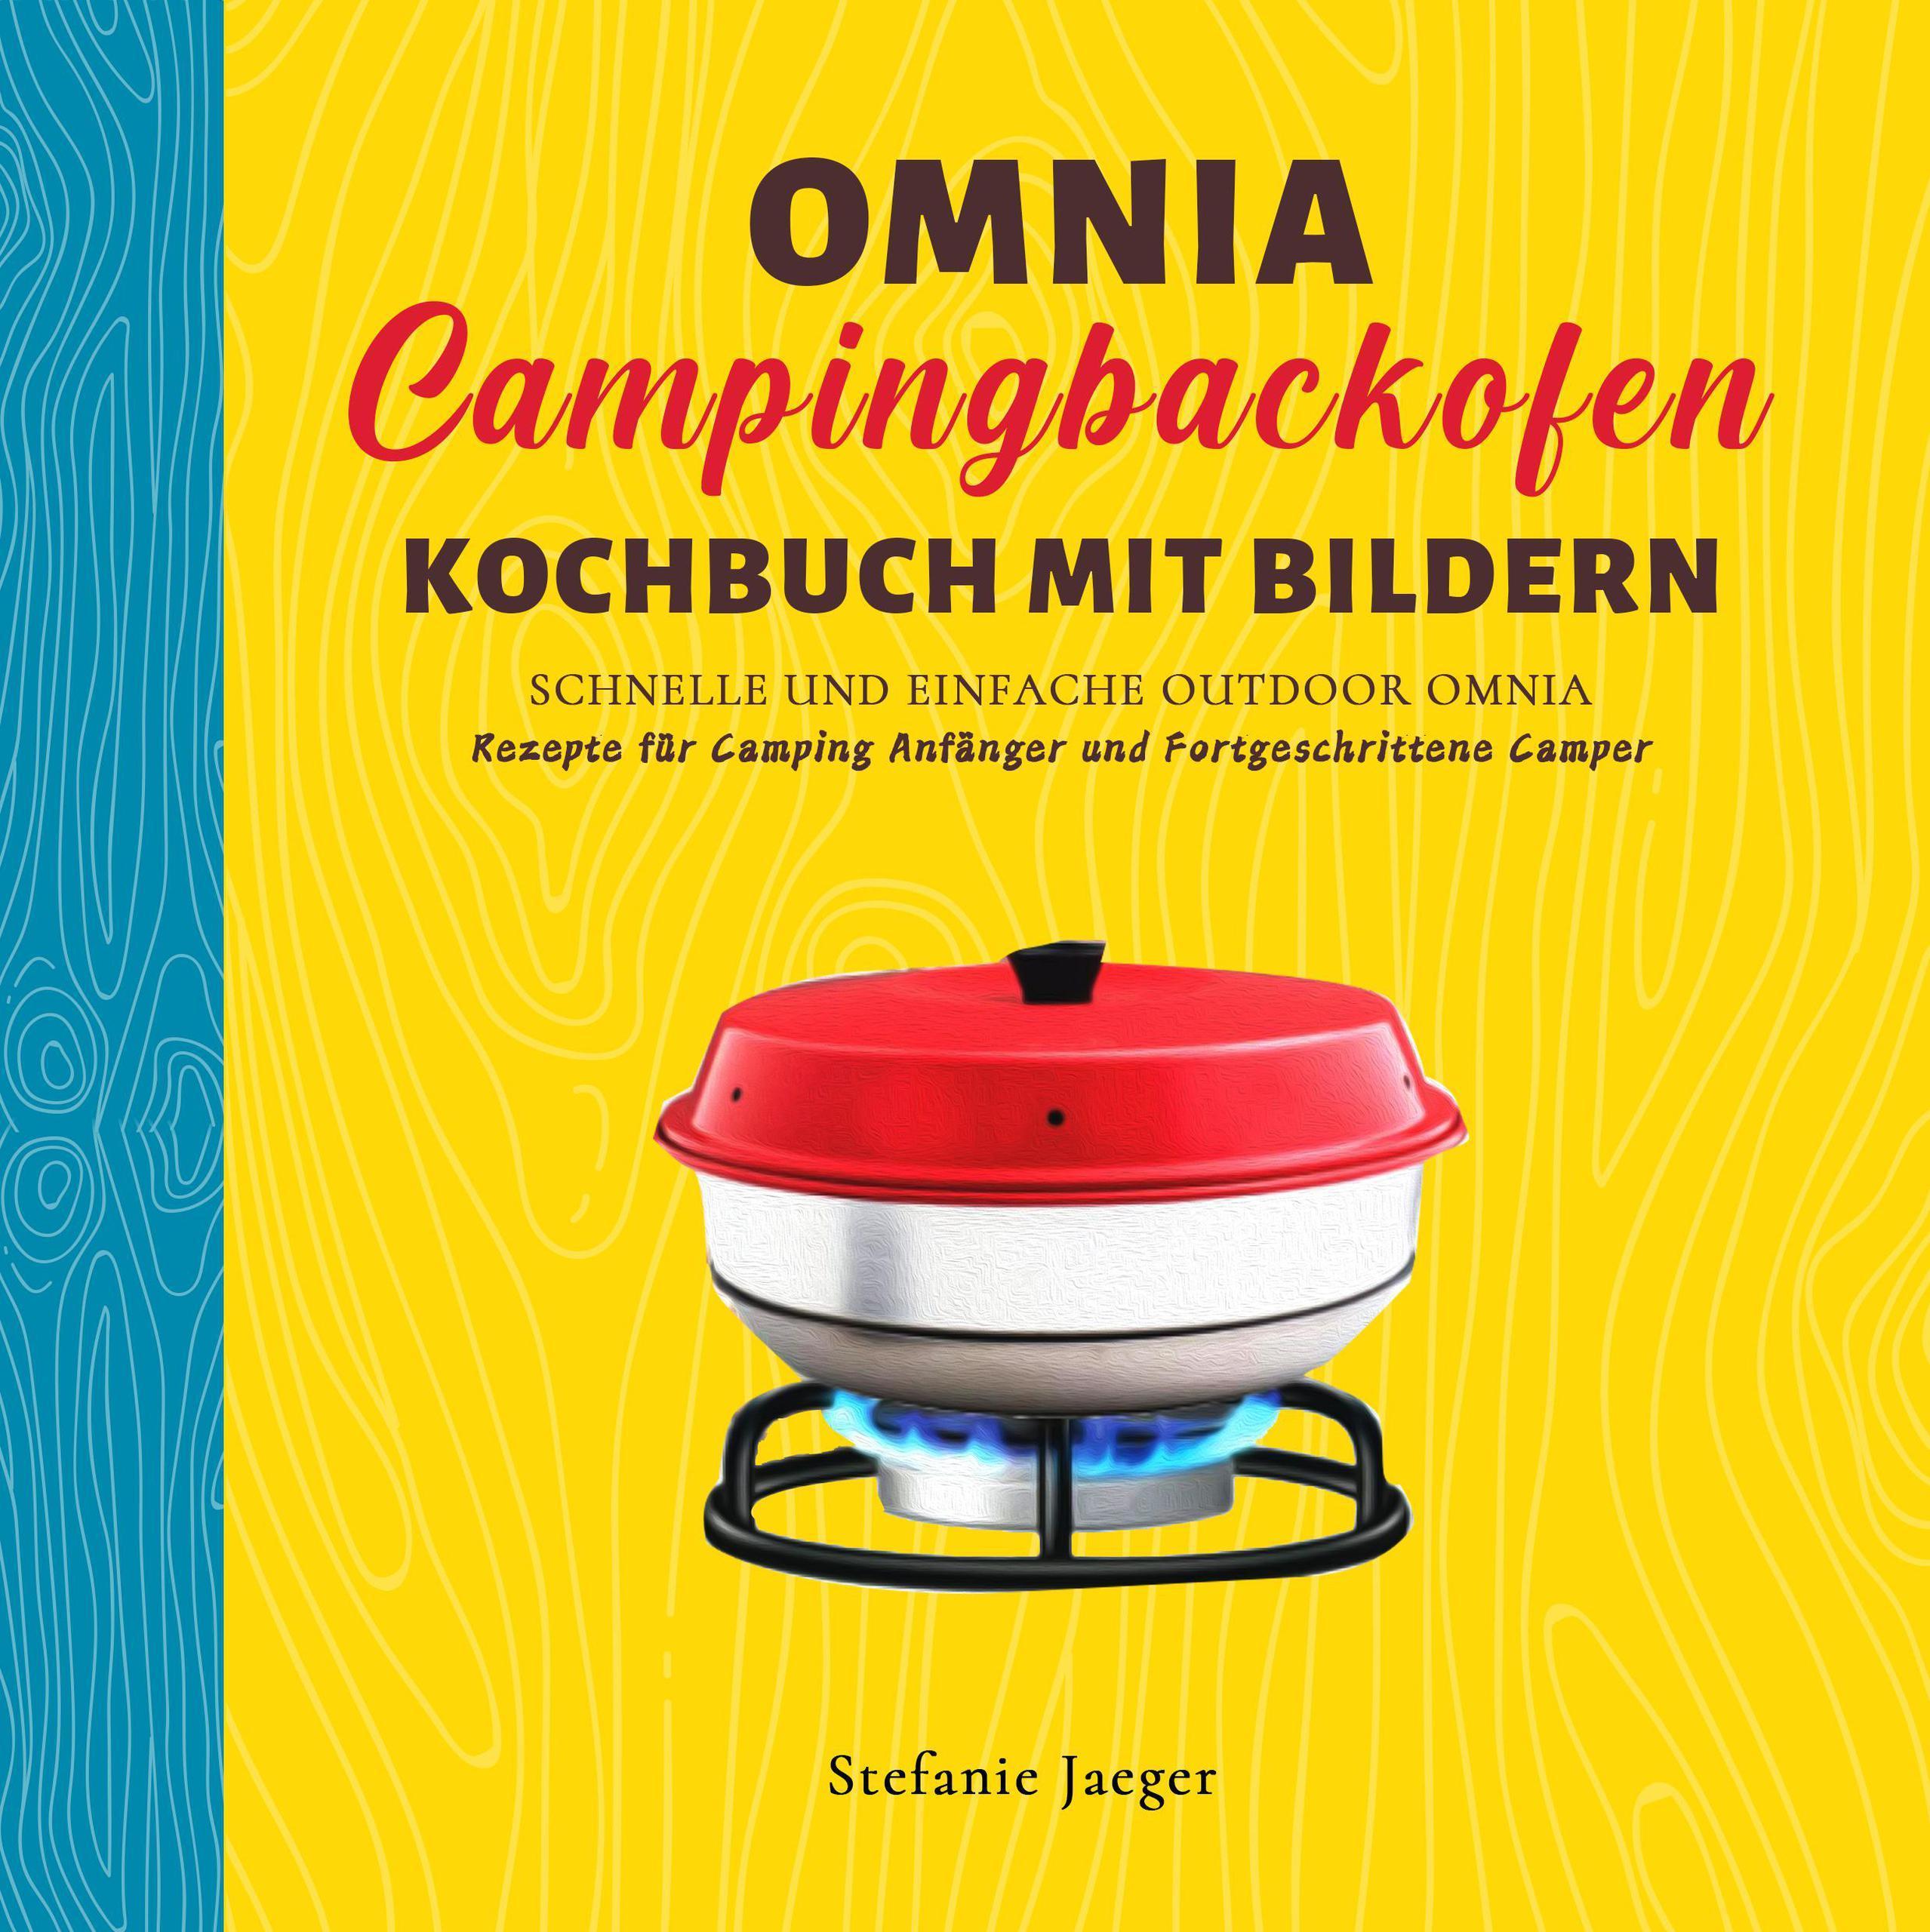 Omnia Campingbackofen Kochbuch Mit Bilder: Schnelle und